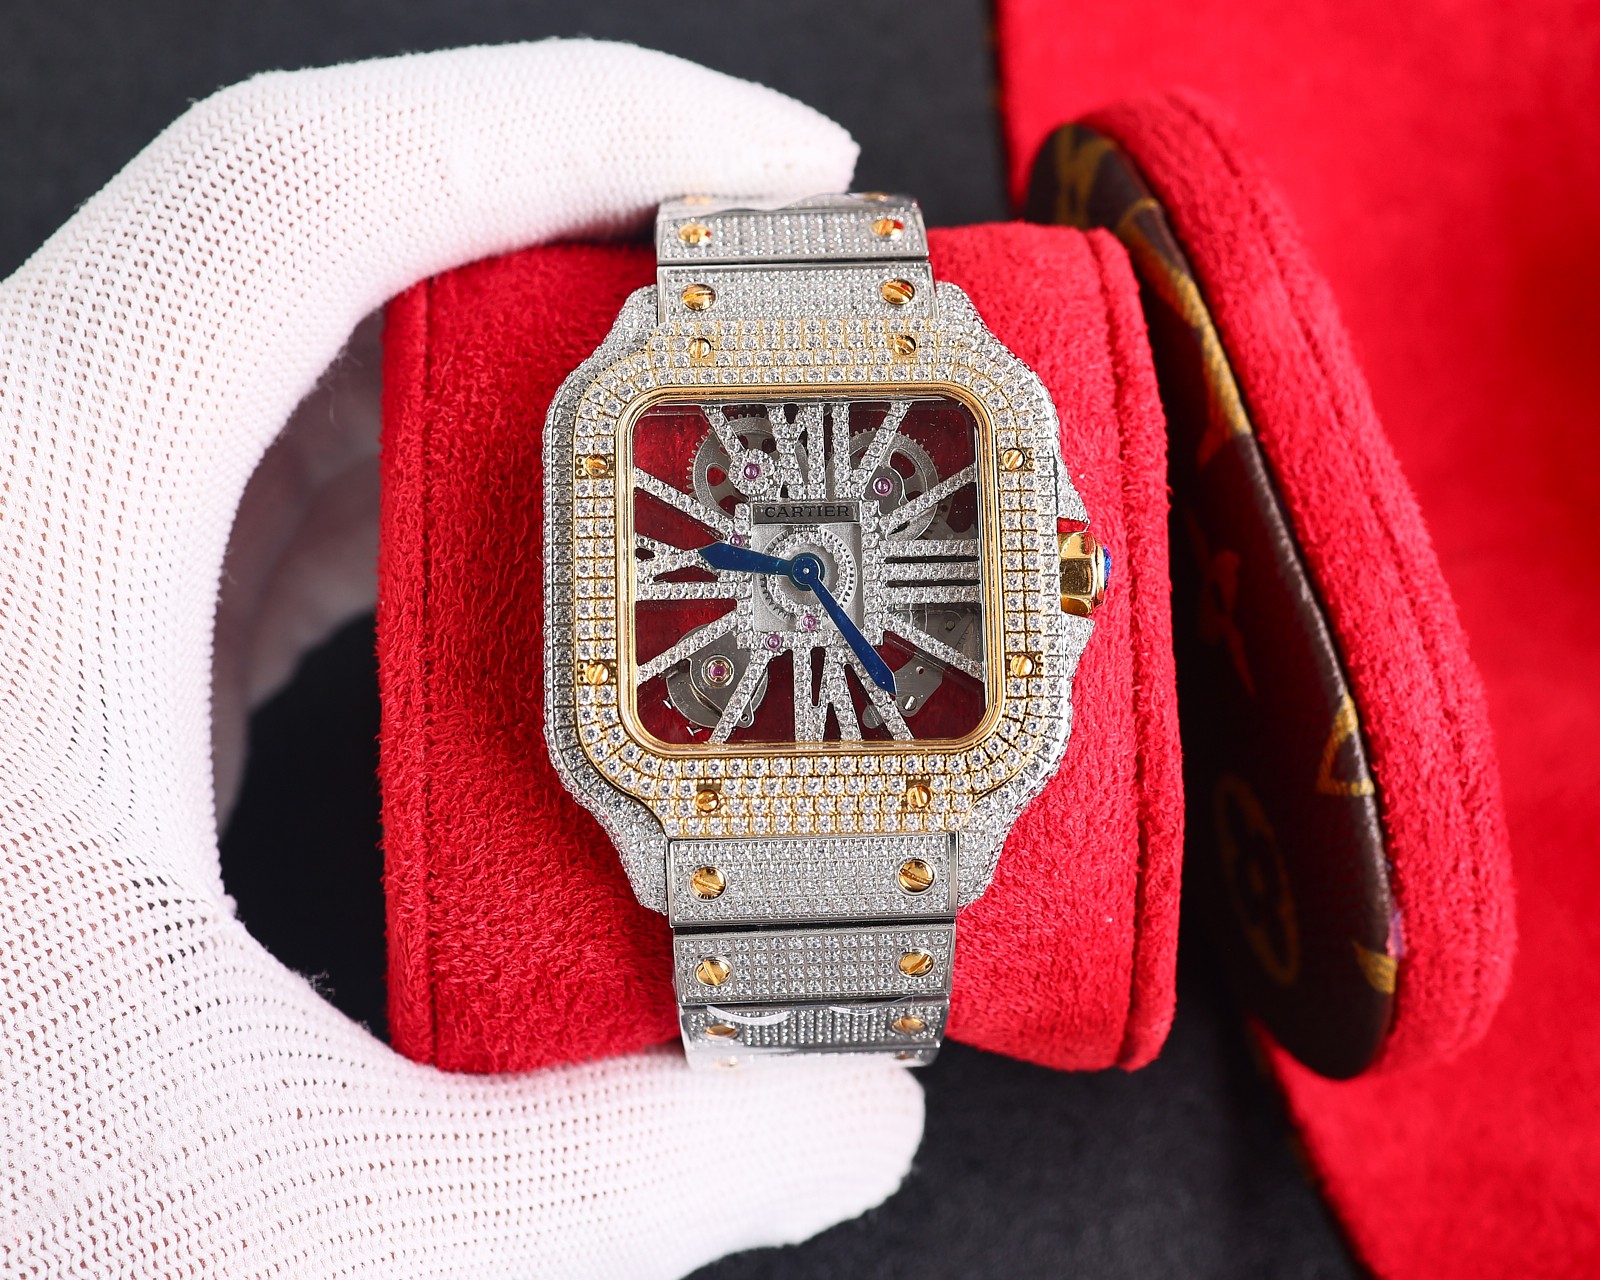 CARTIERカルティエ 腕時計 似てるスーパーコピー フランス 薄いワッチ レザー 四角い時計 スチールバンド_5